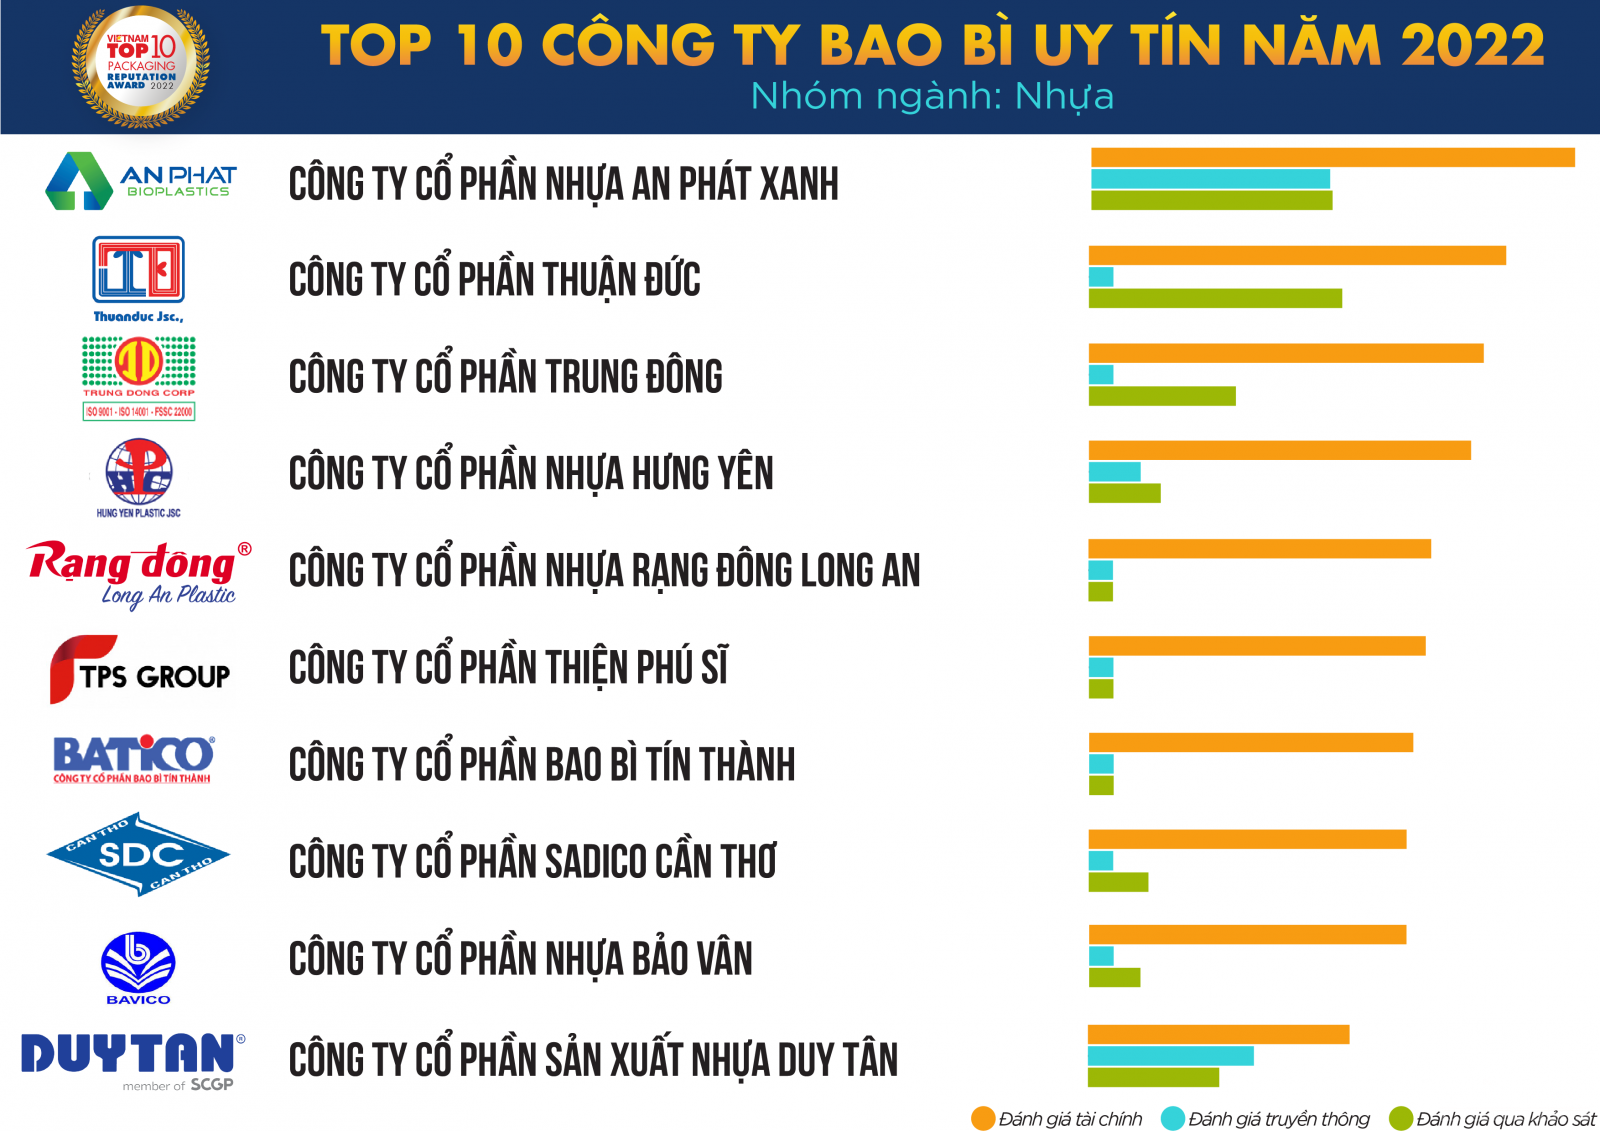 Top 10 Công ty Bao bì uy tín năm 2022. Nguồn: Vietnam Report